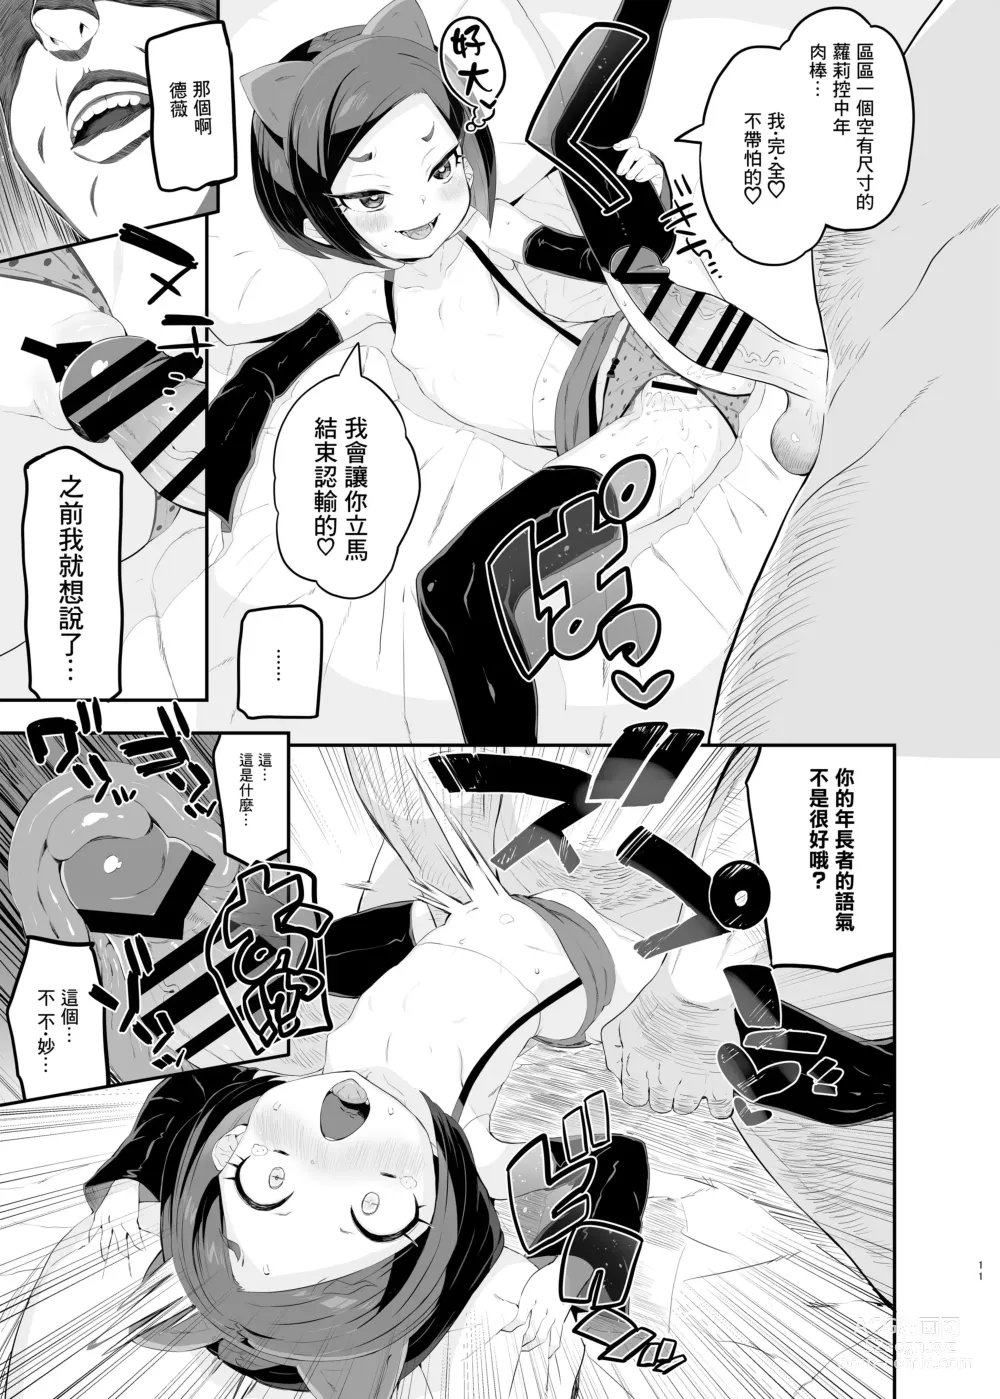 Page 11 of doujinshi Retsujou-ban Mesugaki Trix Lou VS Devi VS Sao-yaku Ojisan